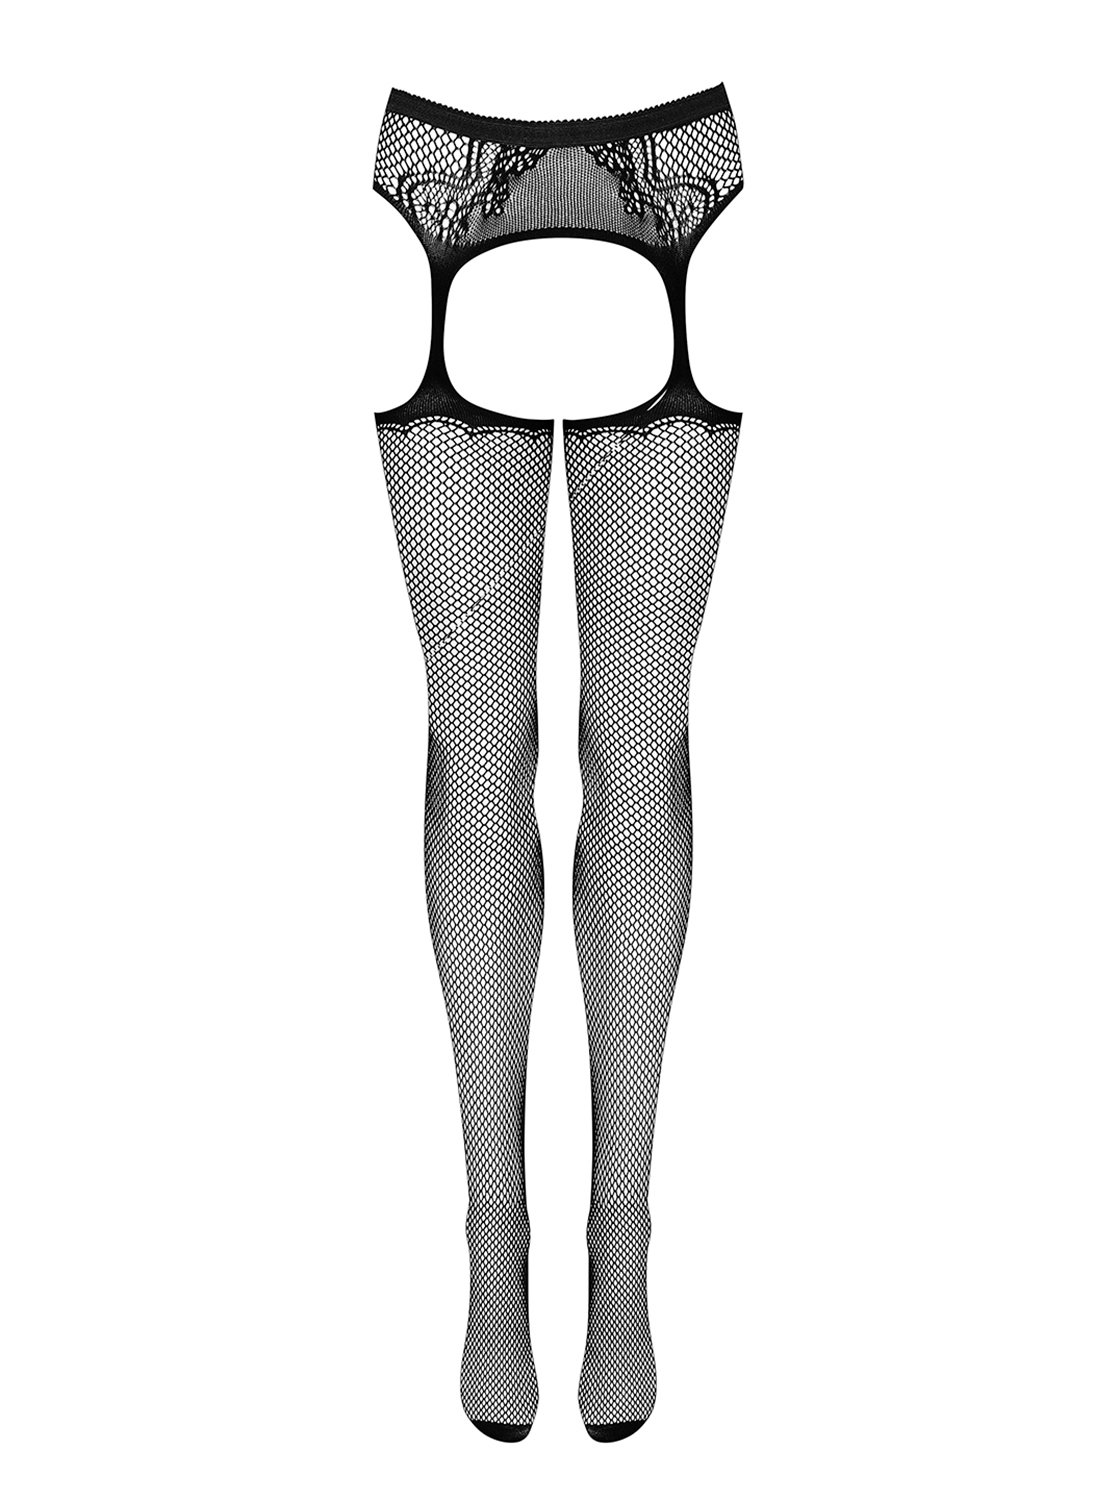 Fotografie Podvazkový pás s punčochami Garter stockings S232 - Obssesive černá